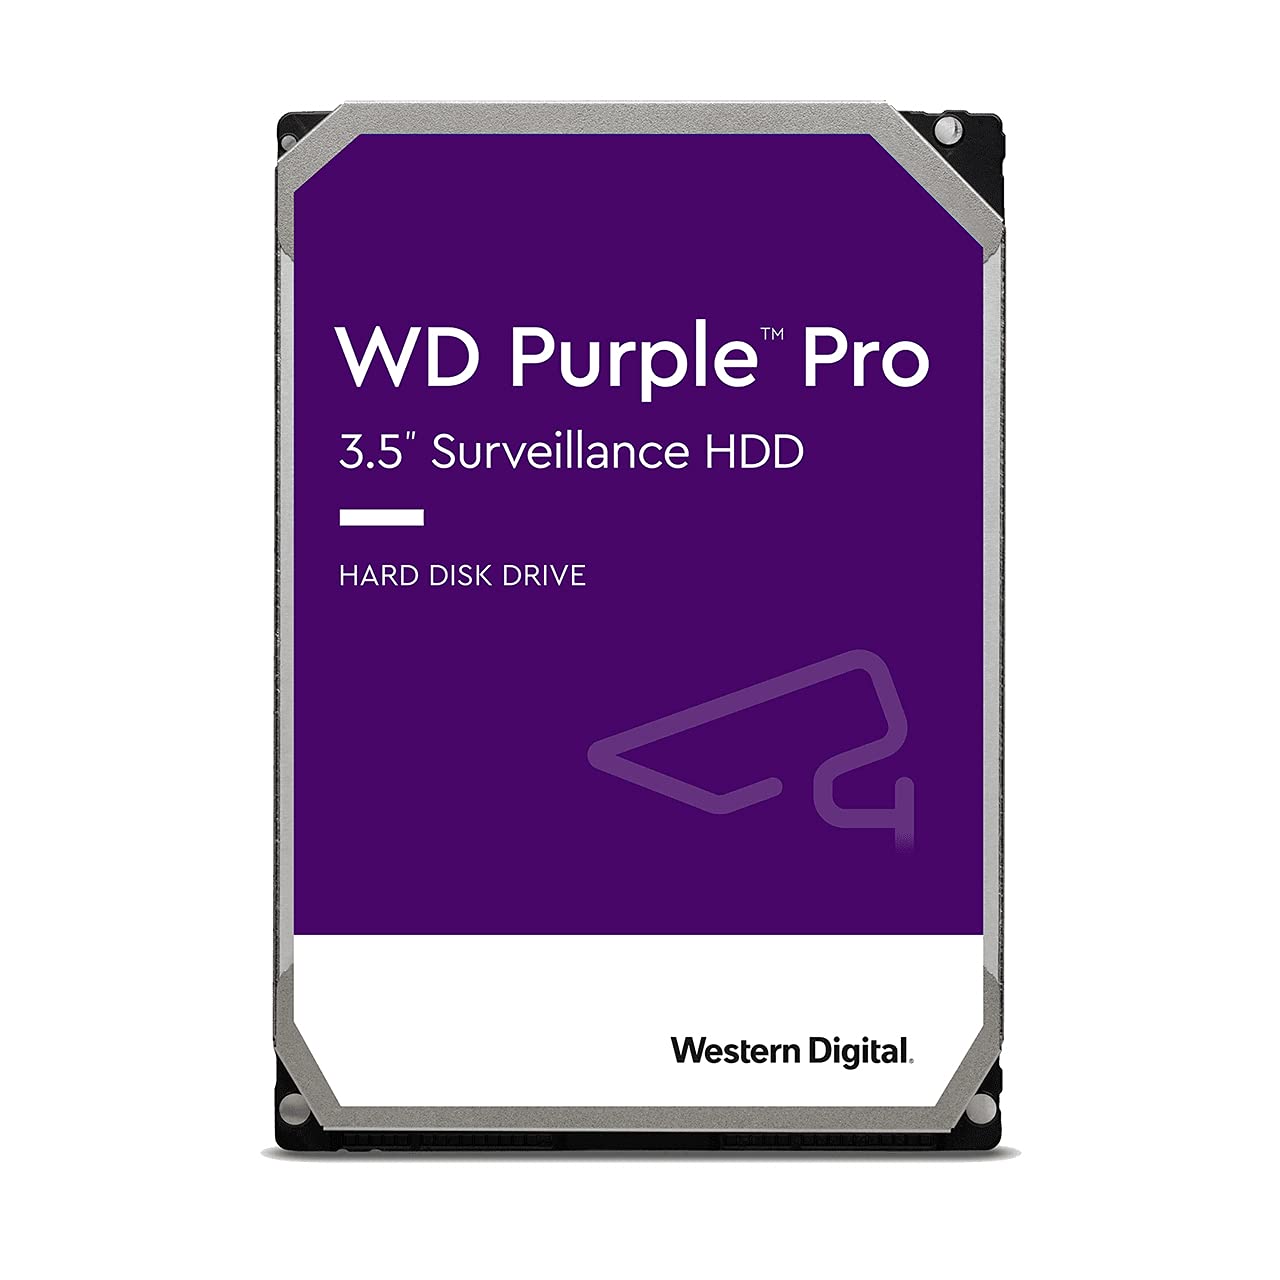 Wd Purple Pro 18tb Av Western Digital Wd181purp 718037889481